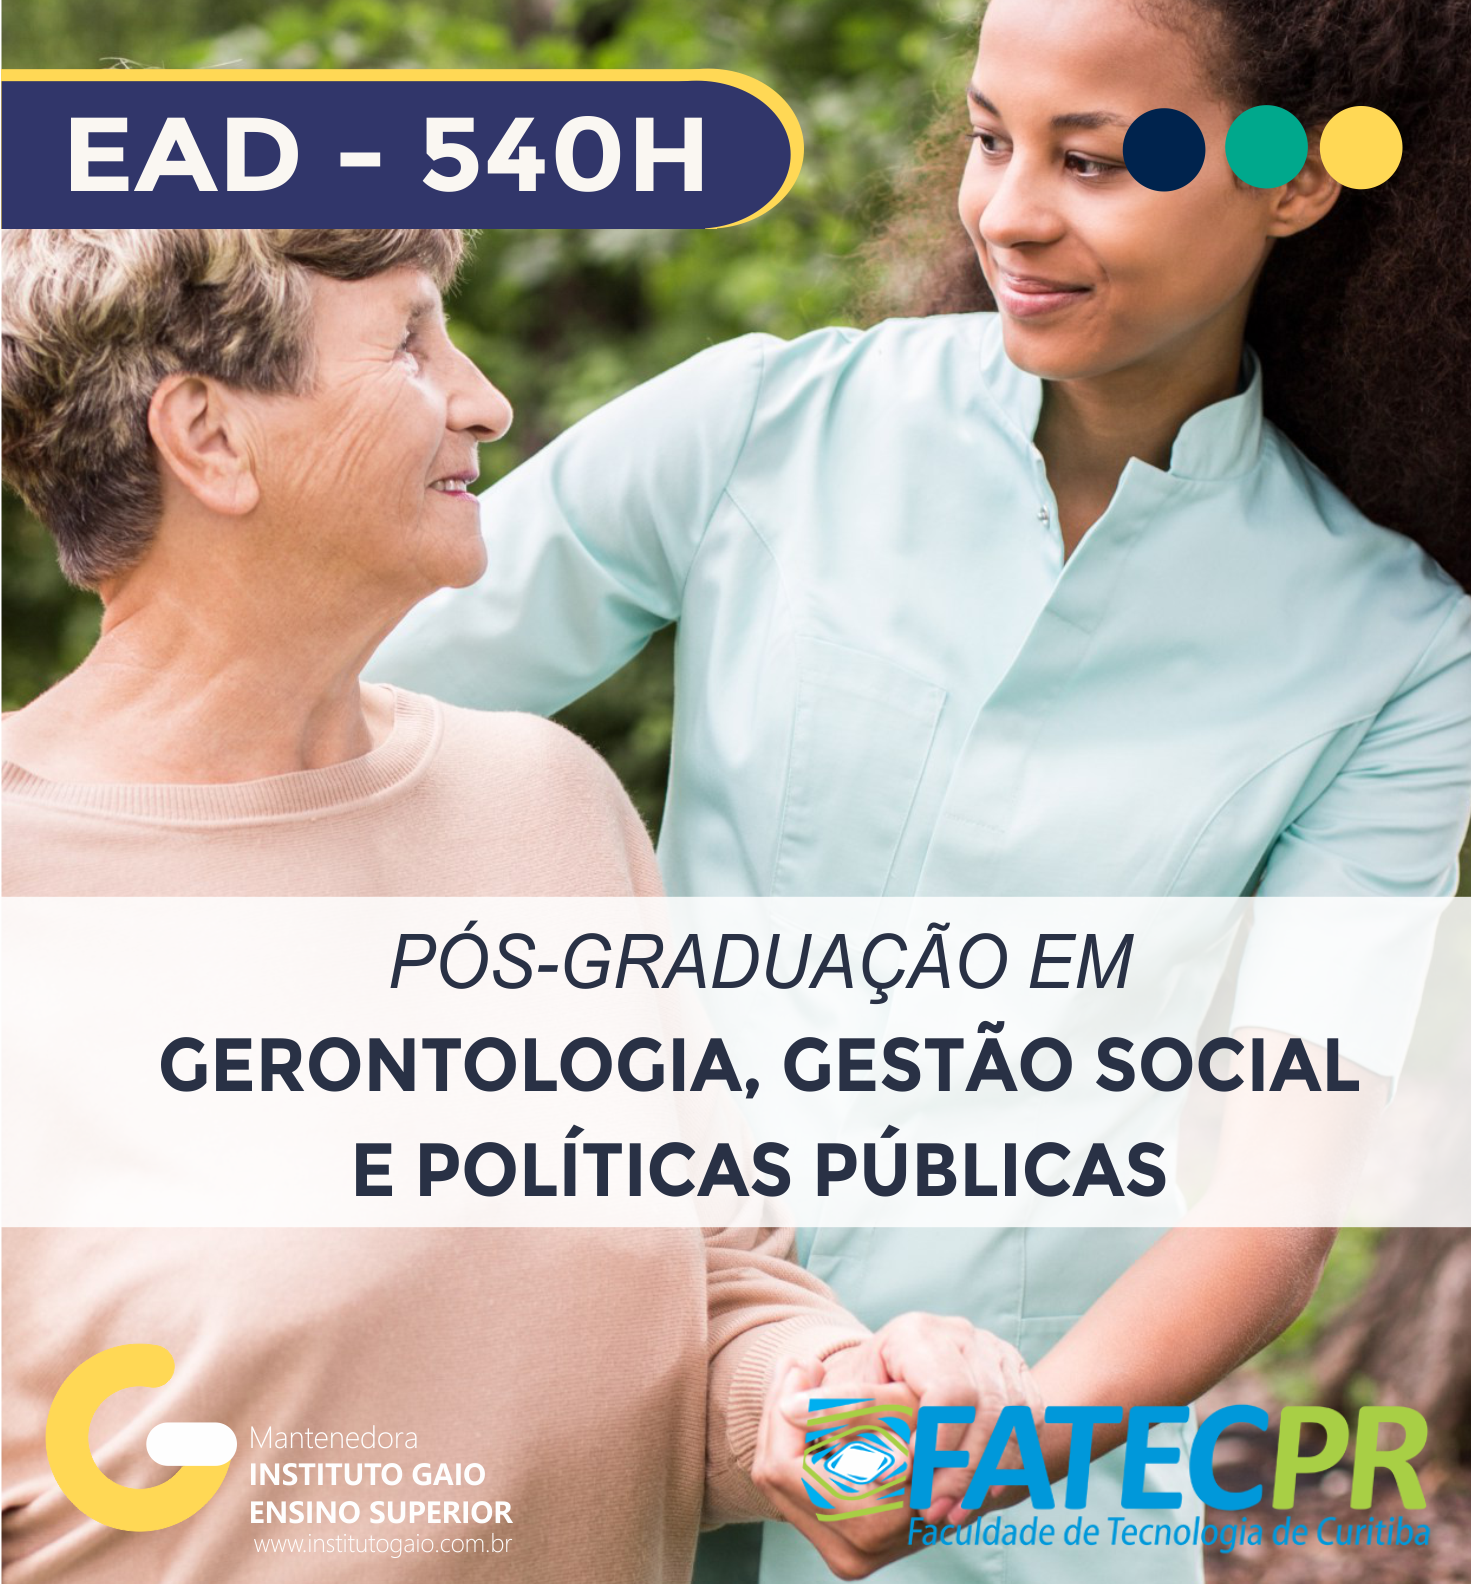 Pós-graduação em Gerontologia, Gestão Social e Políticas Públicas – 540h – GGP1